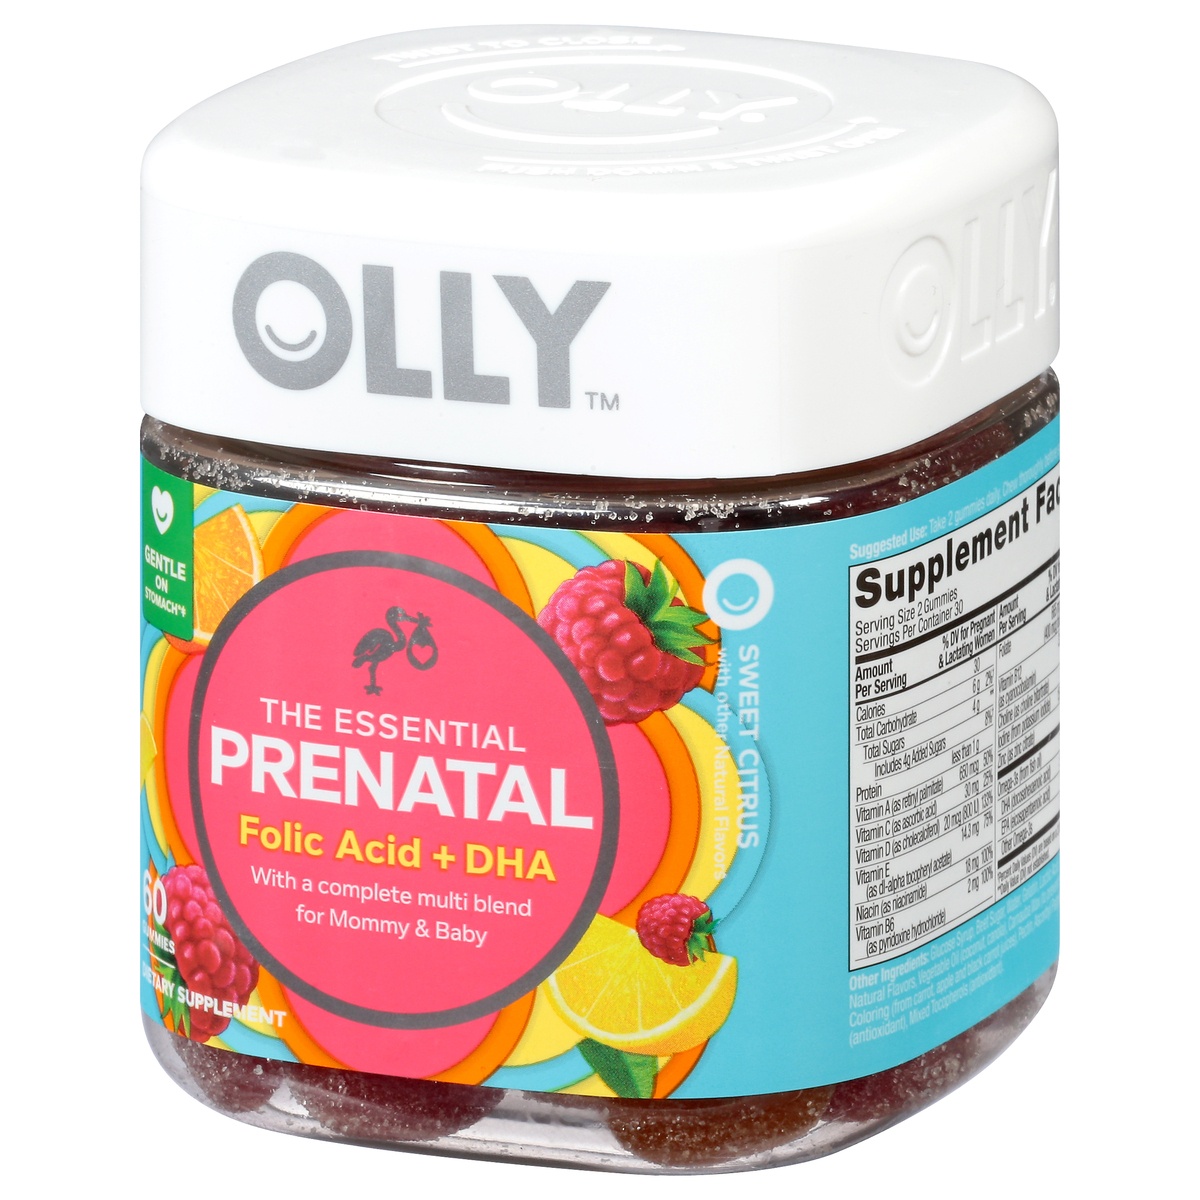 olly prenatal folic acid and dha reviews